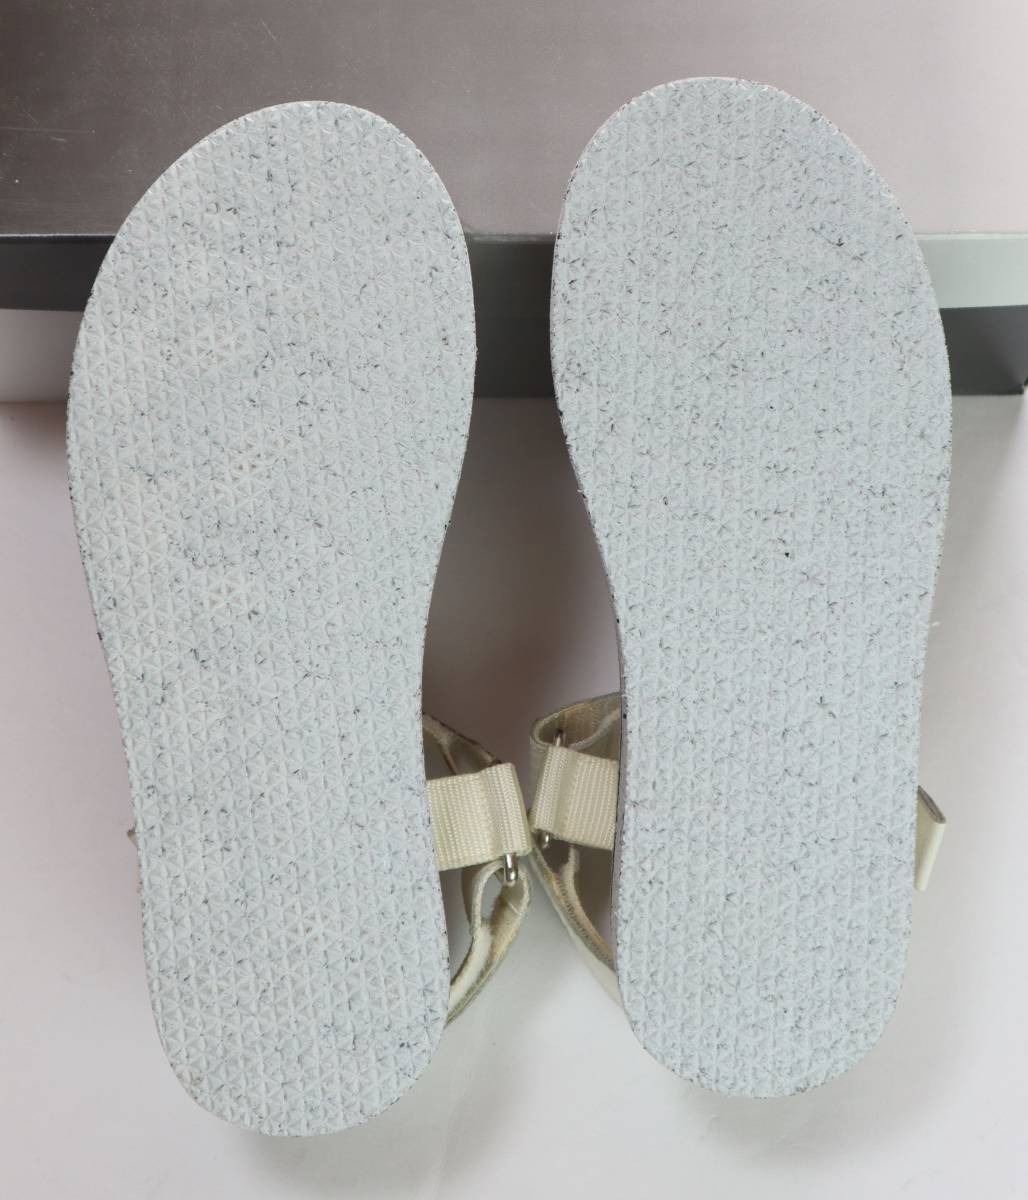 *HAMNETT* задний с ремешком сандалии (L,37015, белый ) новый товар не использовался 